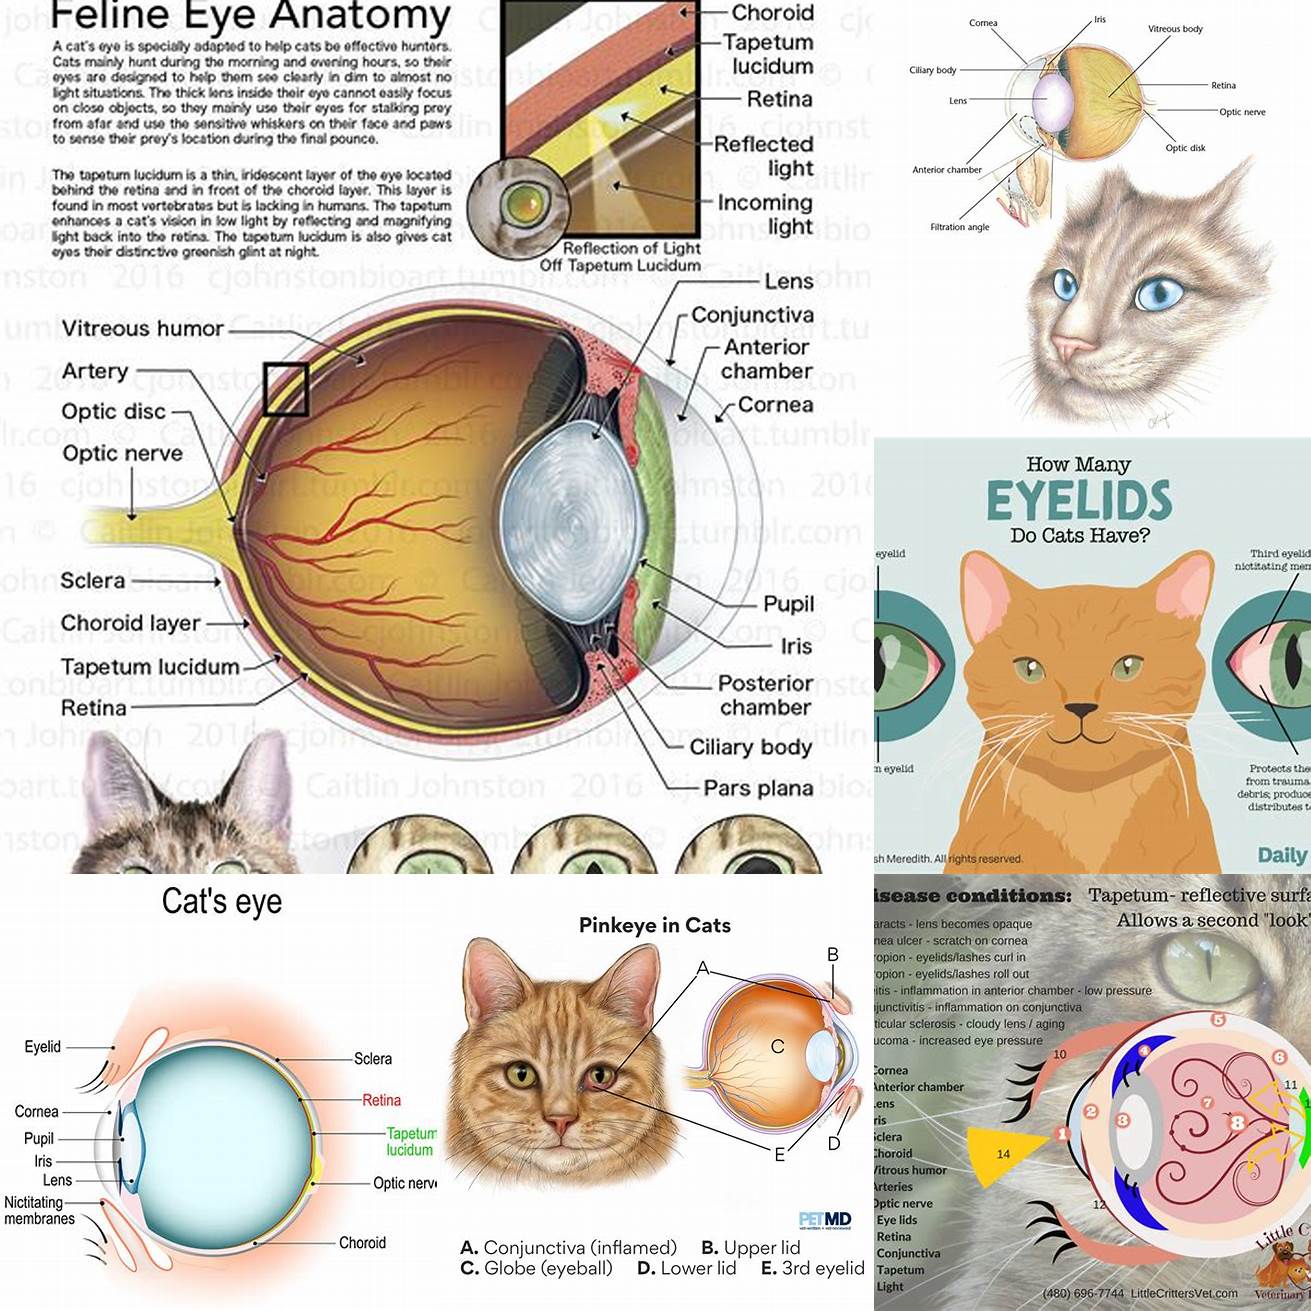 Image 1 Anatomy of Cat Eyes